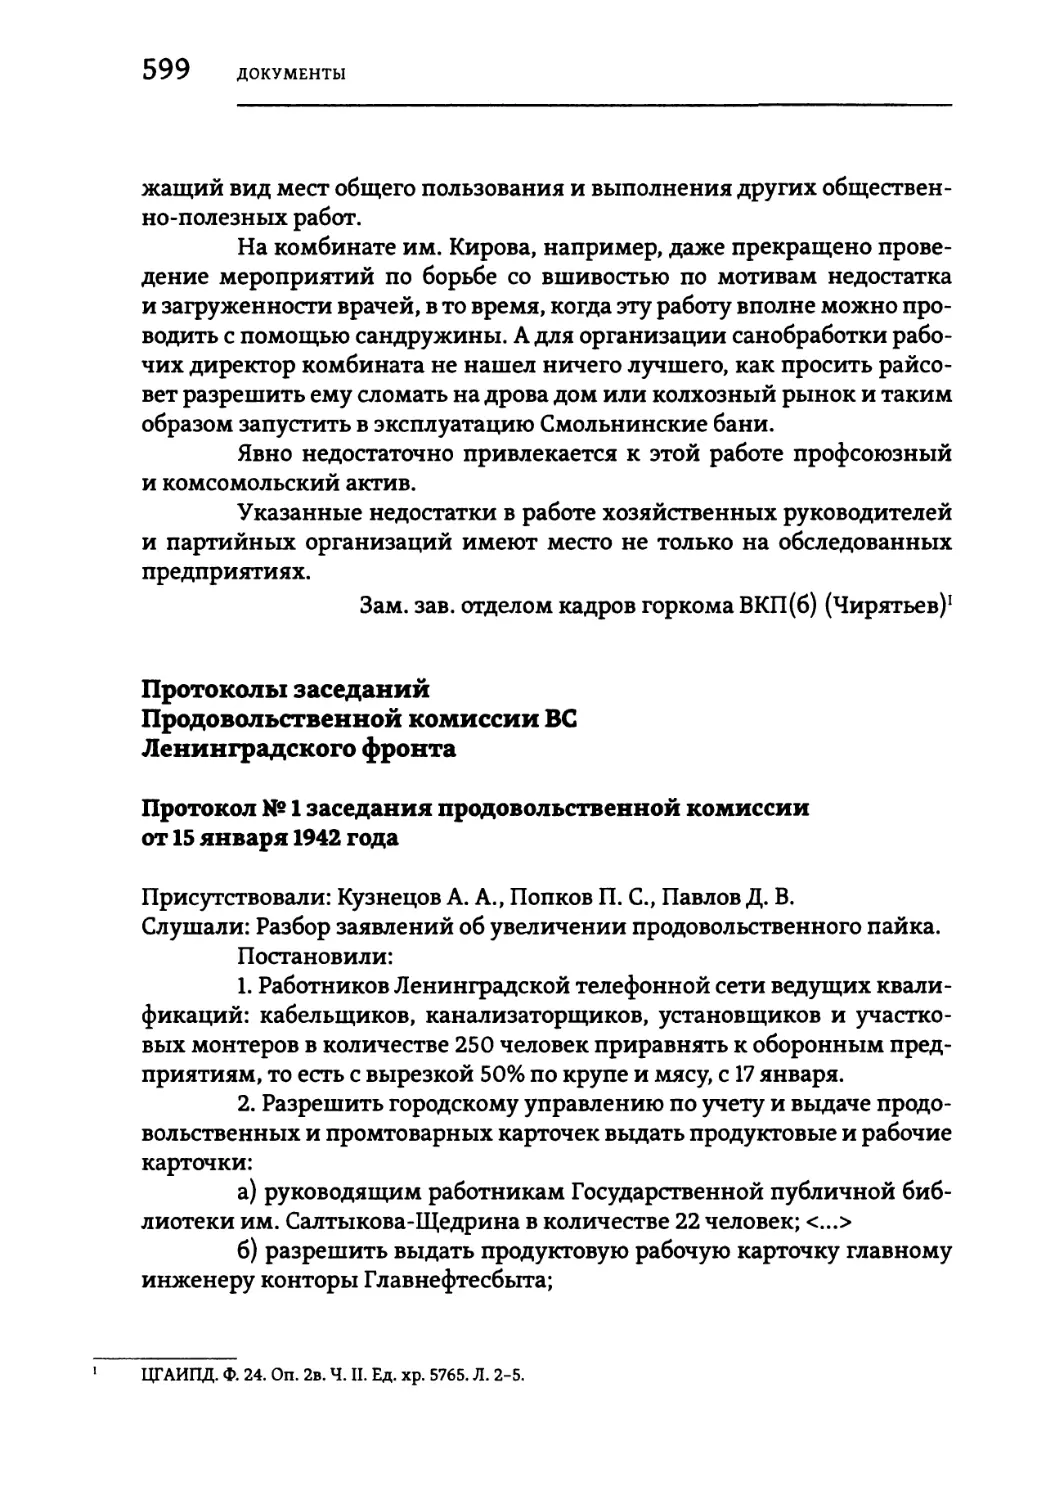 Протоколы заседаний Продовольственной комиссии ВС Ленинградского фронта